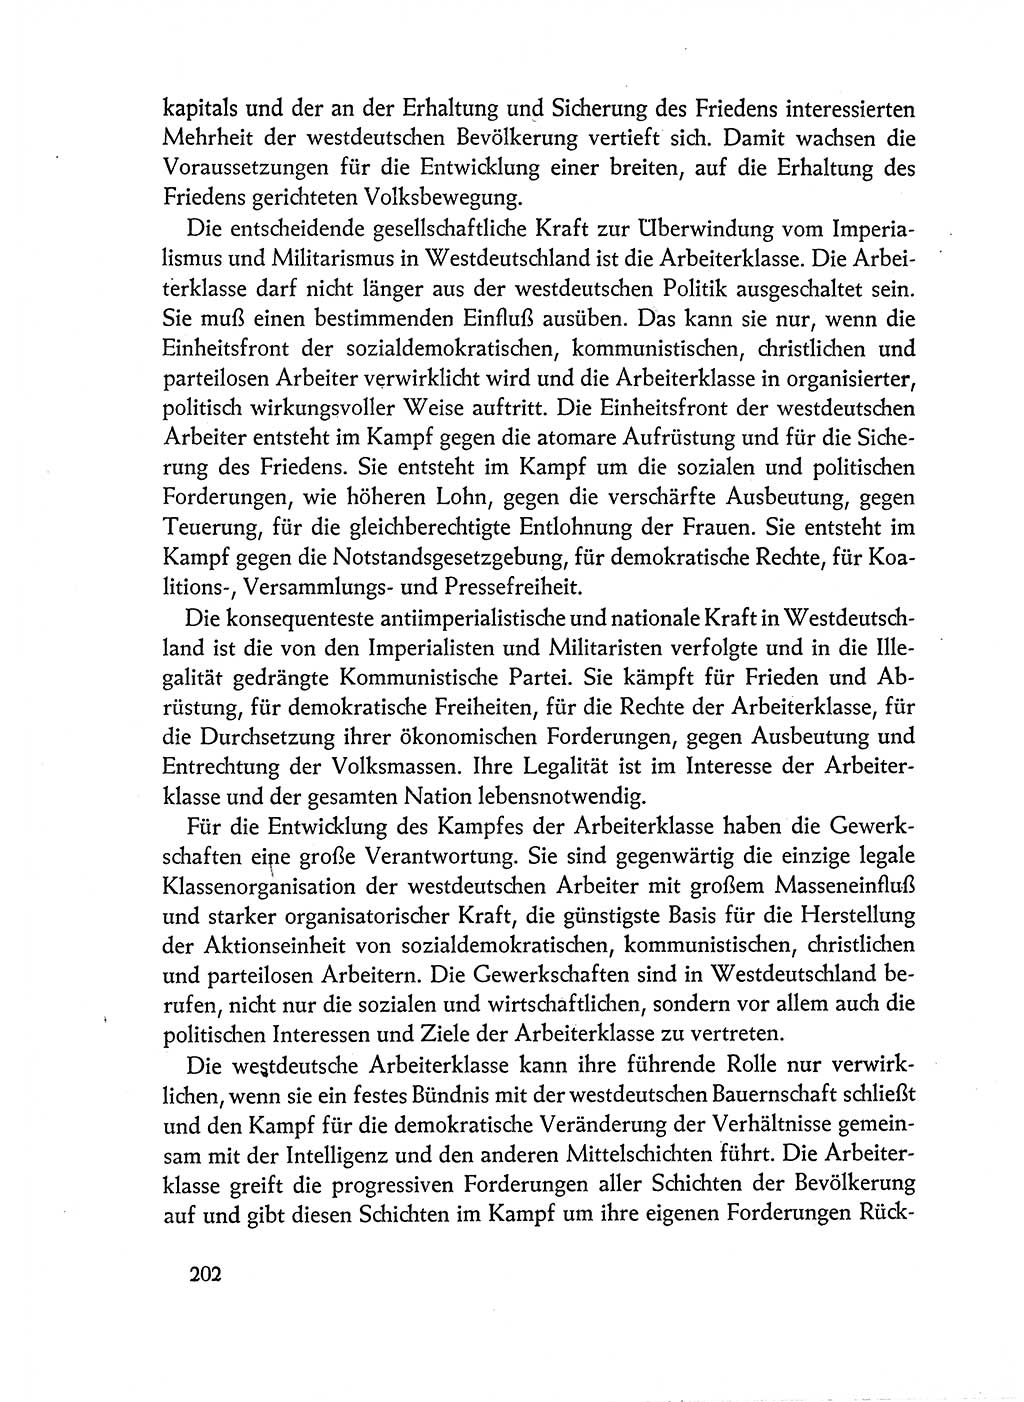 Dokumente der Sozialistischen Einheitspartei Deutschlands (SED) [Deutsche Demokratische Republik (DDR)] 1962-1963, Seite 202 (Dok. SED DDR 1962-1963, S. 202)